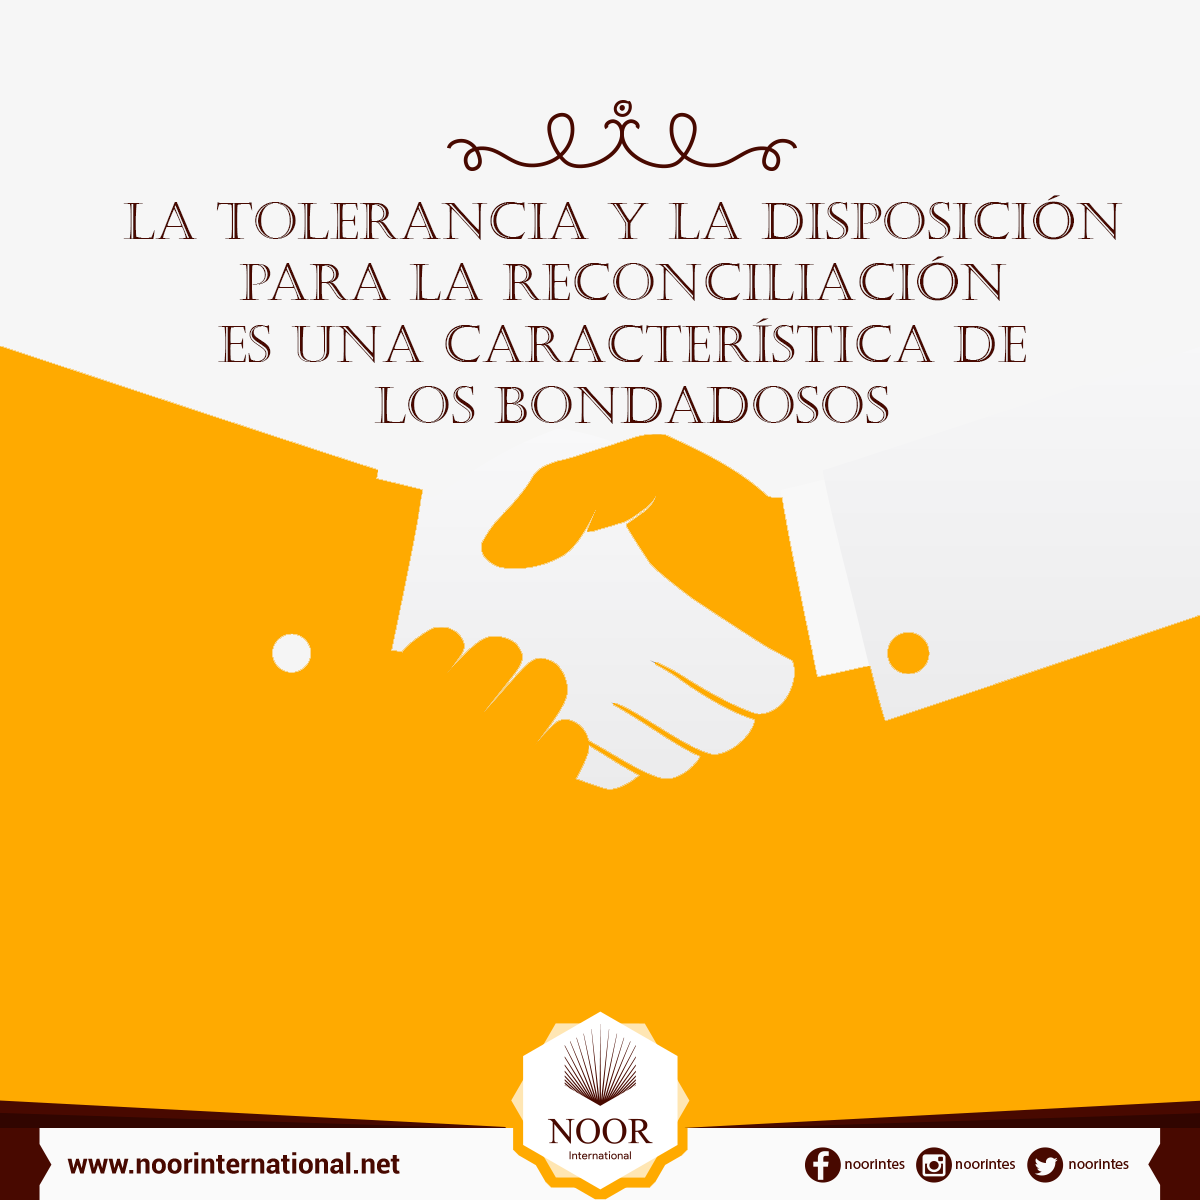 La tolerancia y la disposición para la reconciliación es una característica de los bondadosos